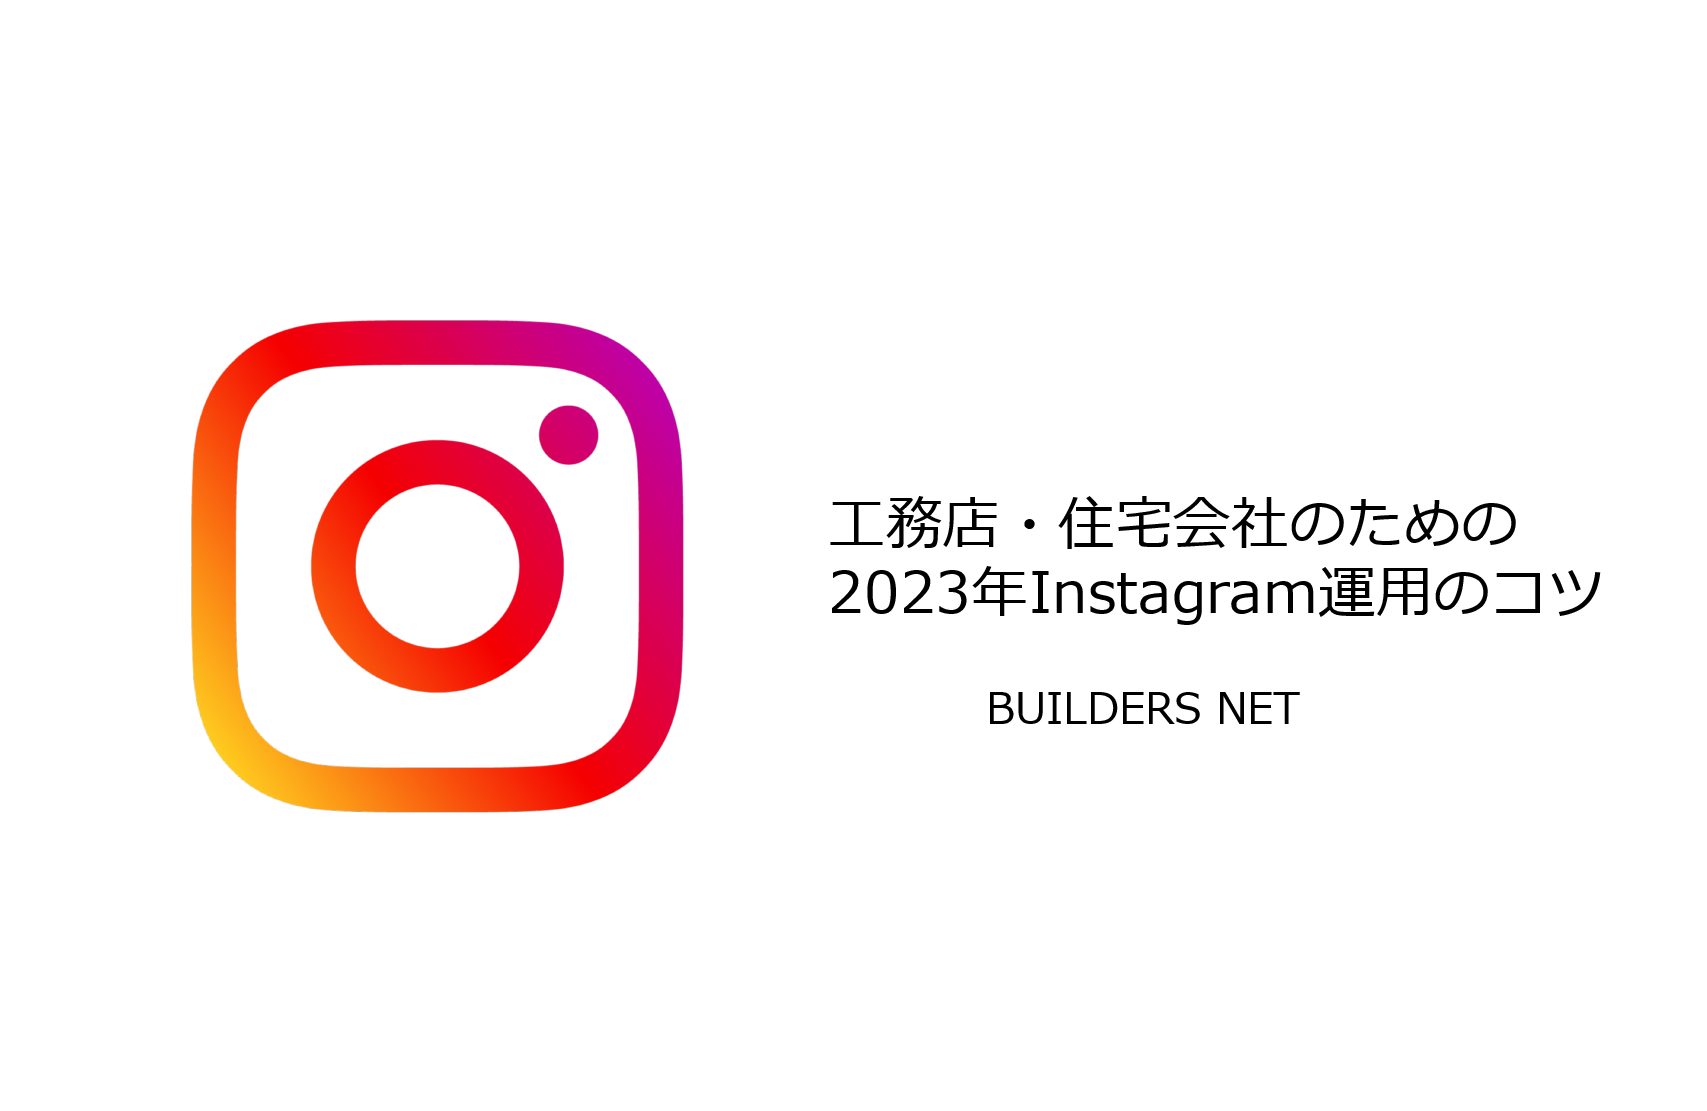 【工務店】2023年度版 Instagram運用のコツ